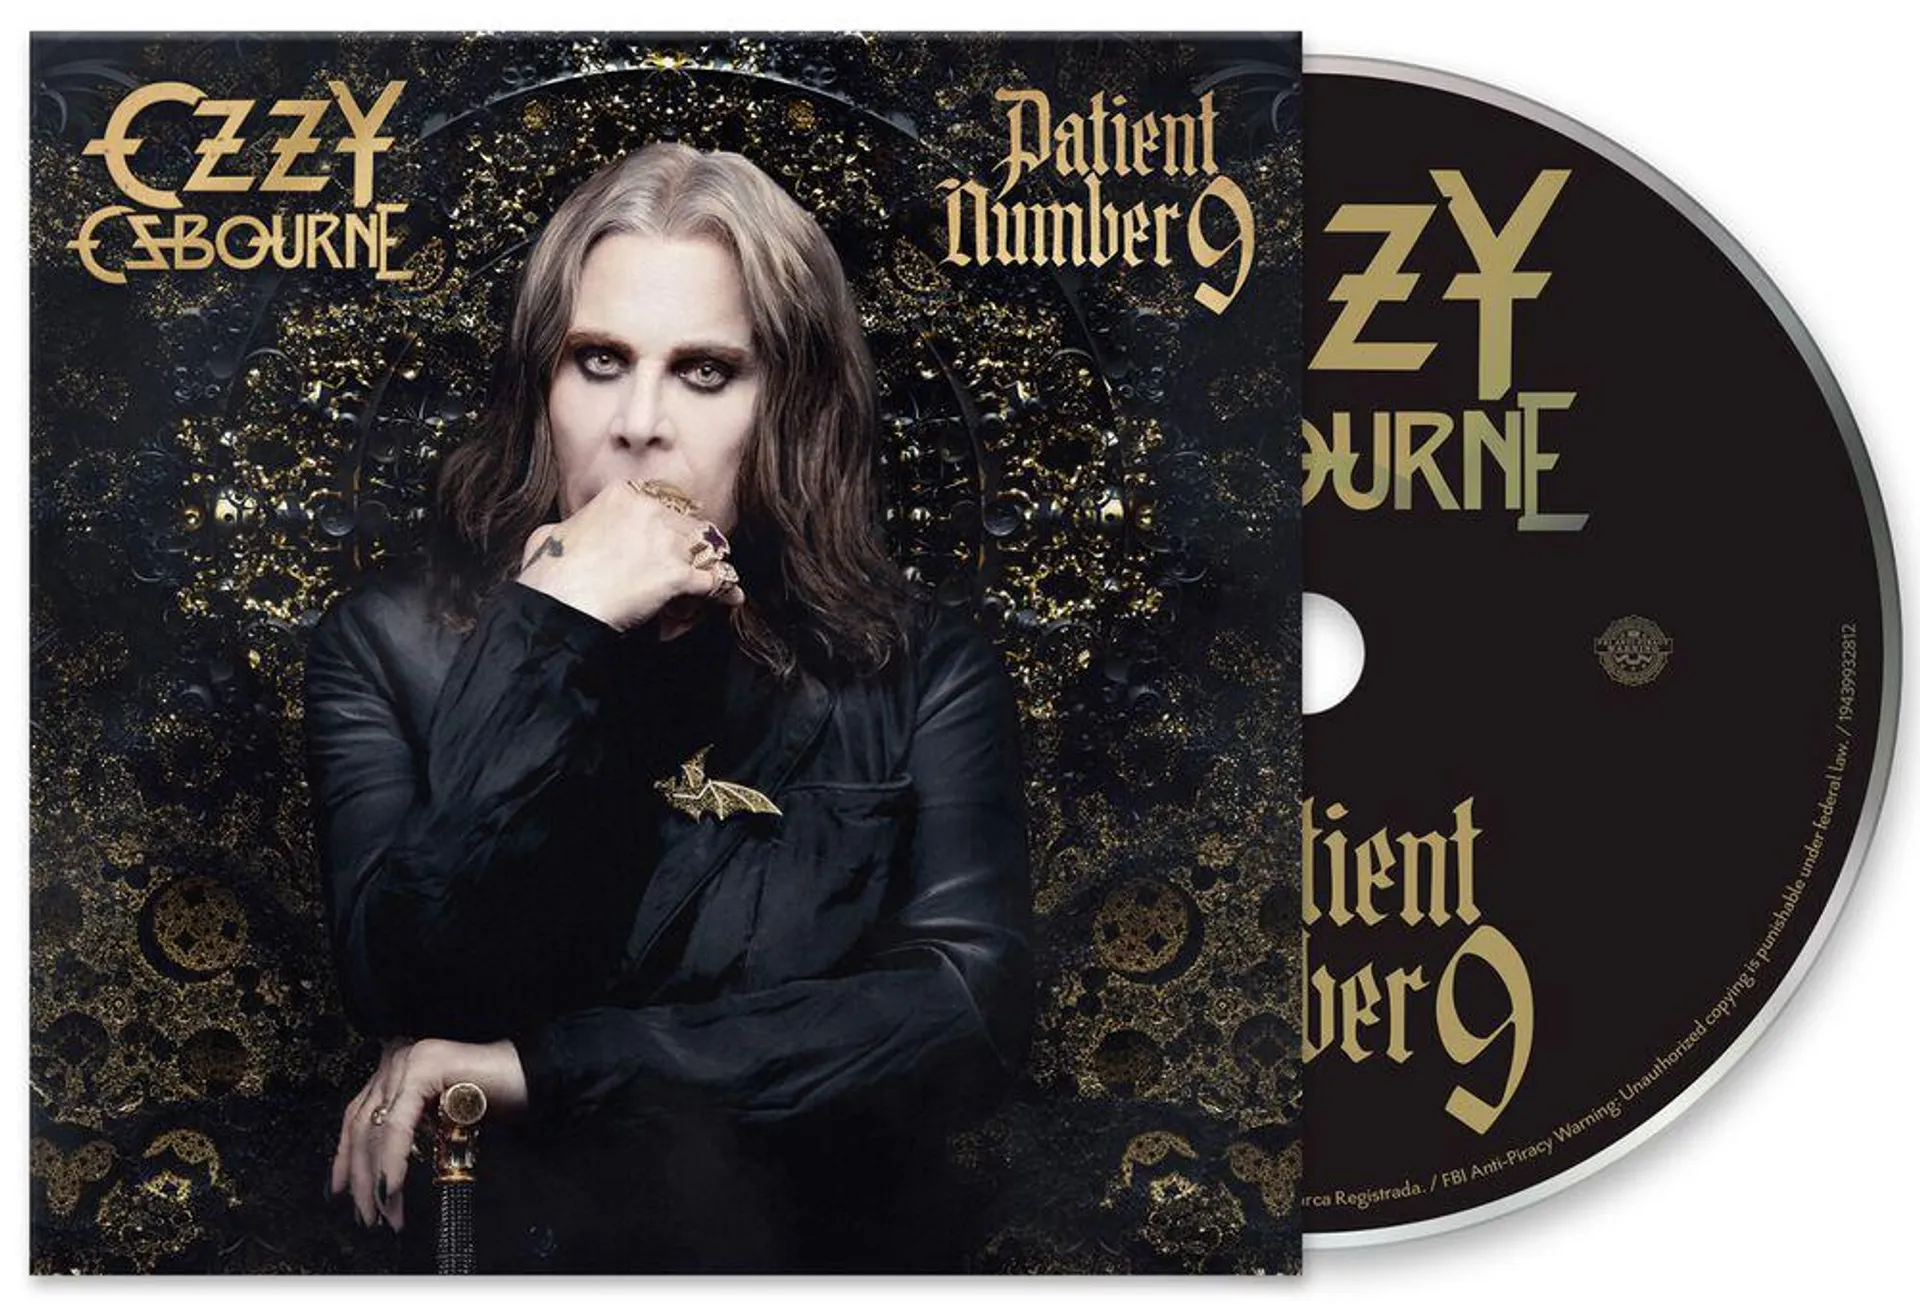 "Patient number 9" CD de Ozzy Osbourne